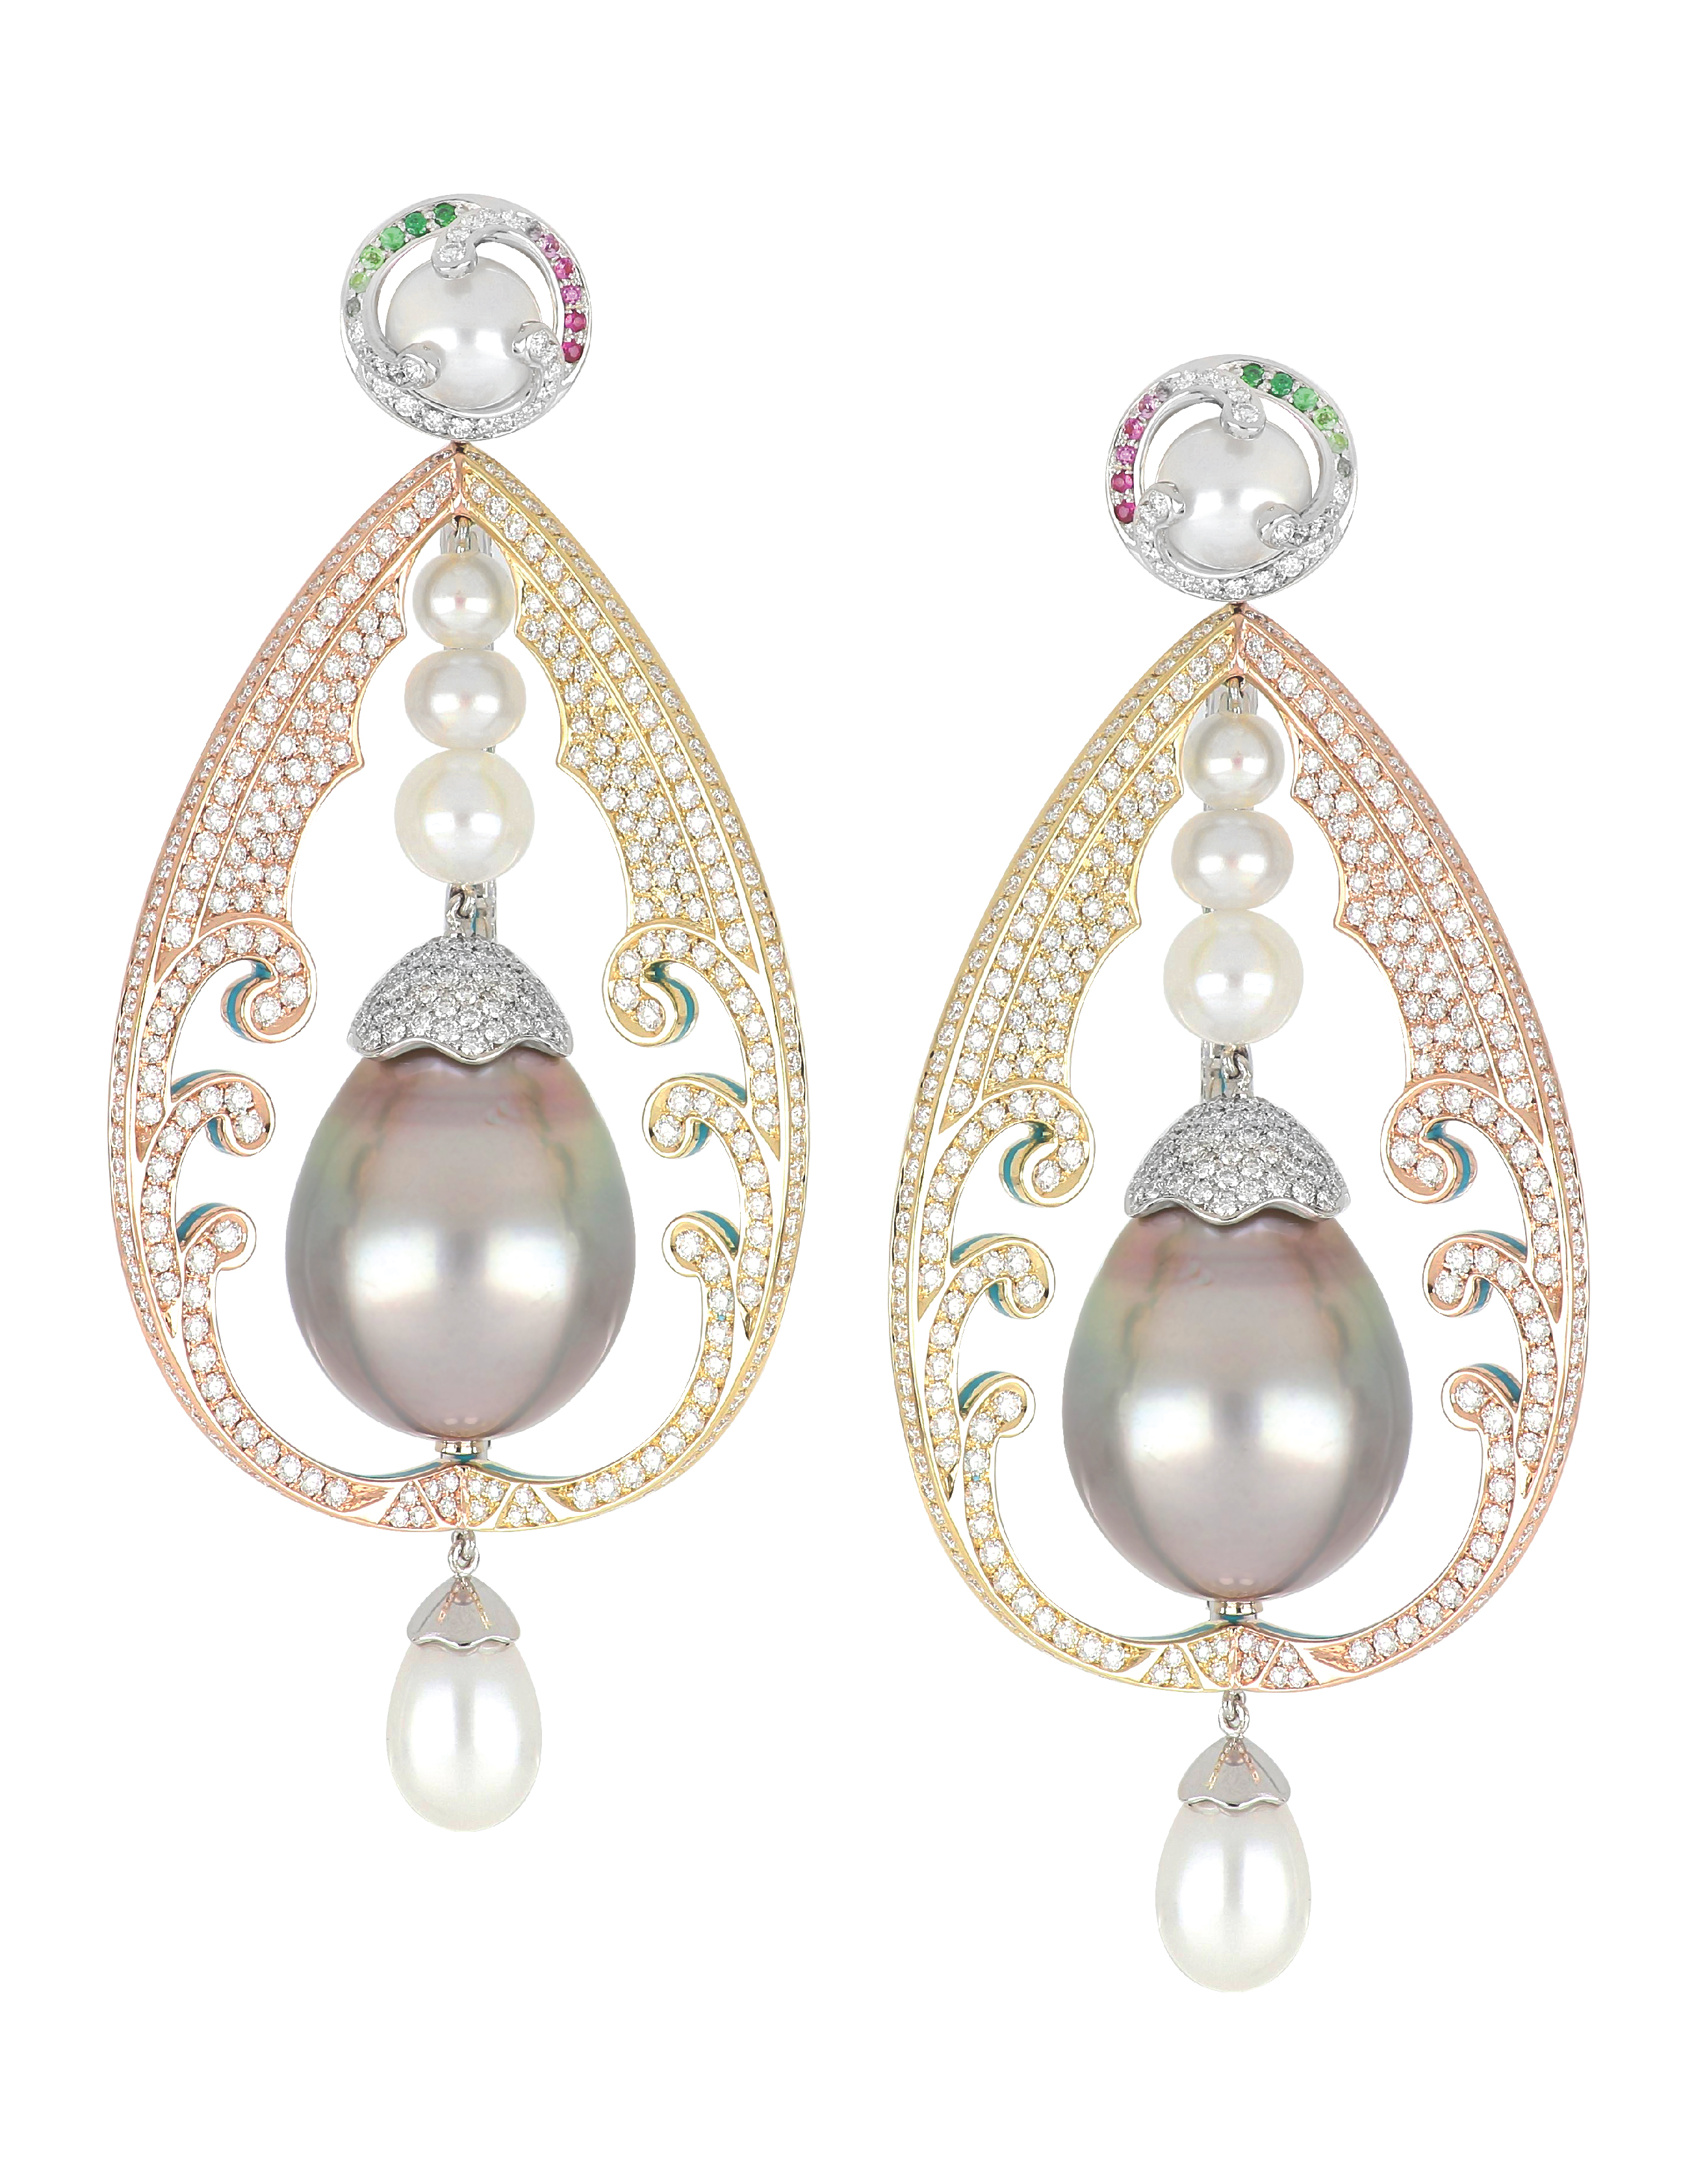 Oceana Pearl Earrings